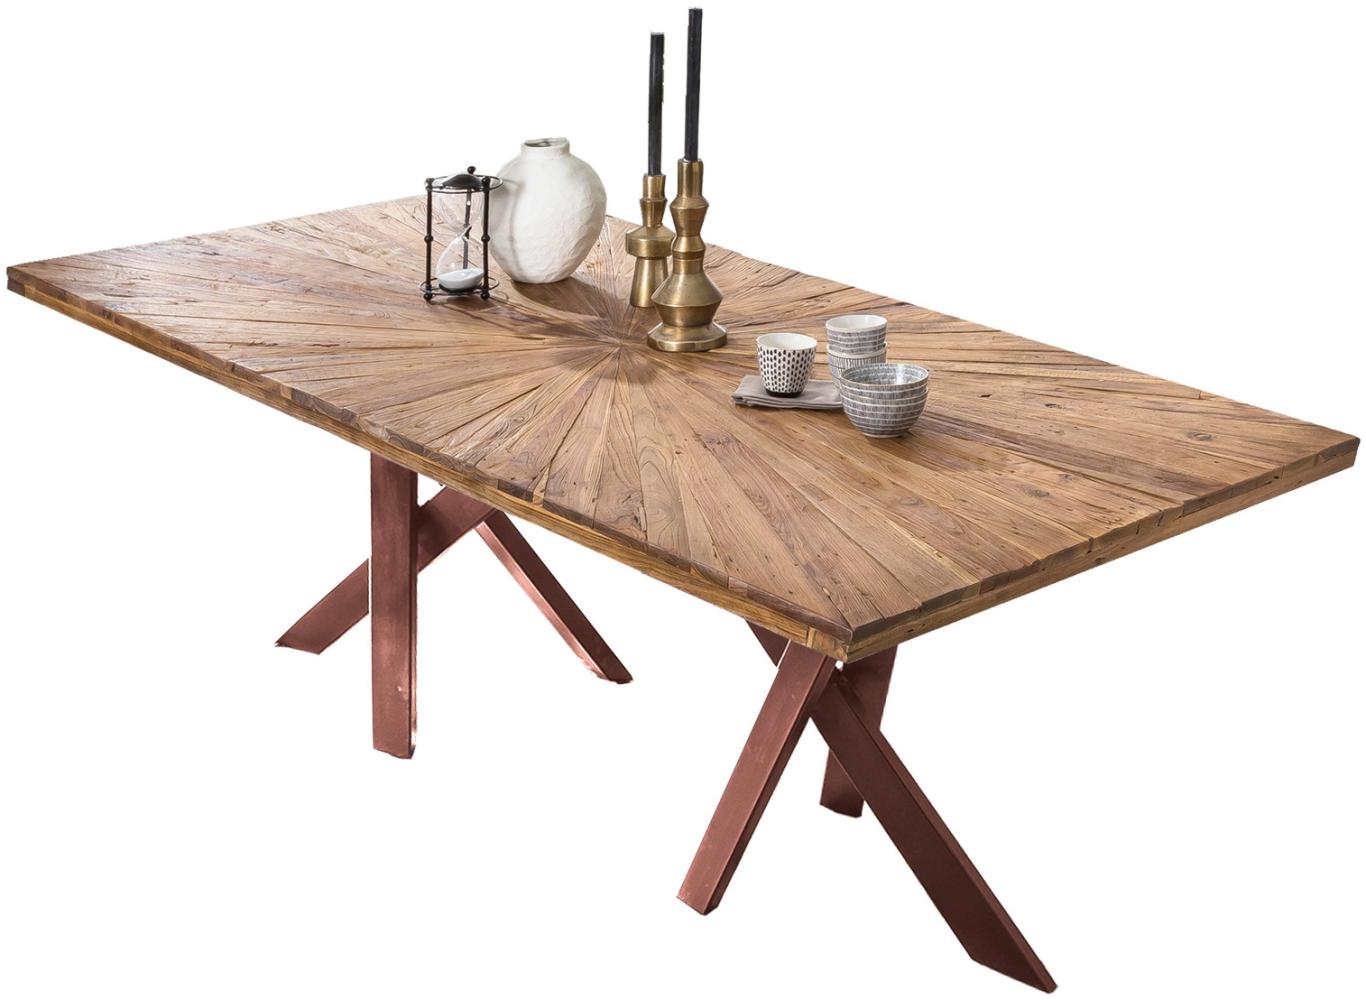 Sit Möbel Tische & Bänke Tisch 220x100 cm, Platte Teak natur, Gestell Metall antikbraun Bild 1